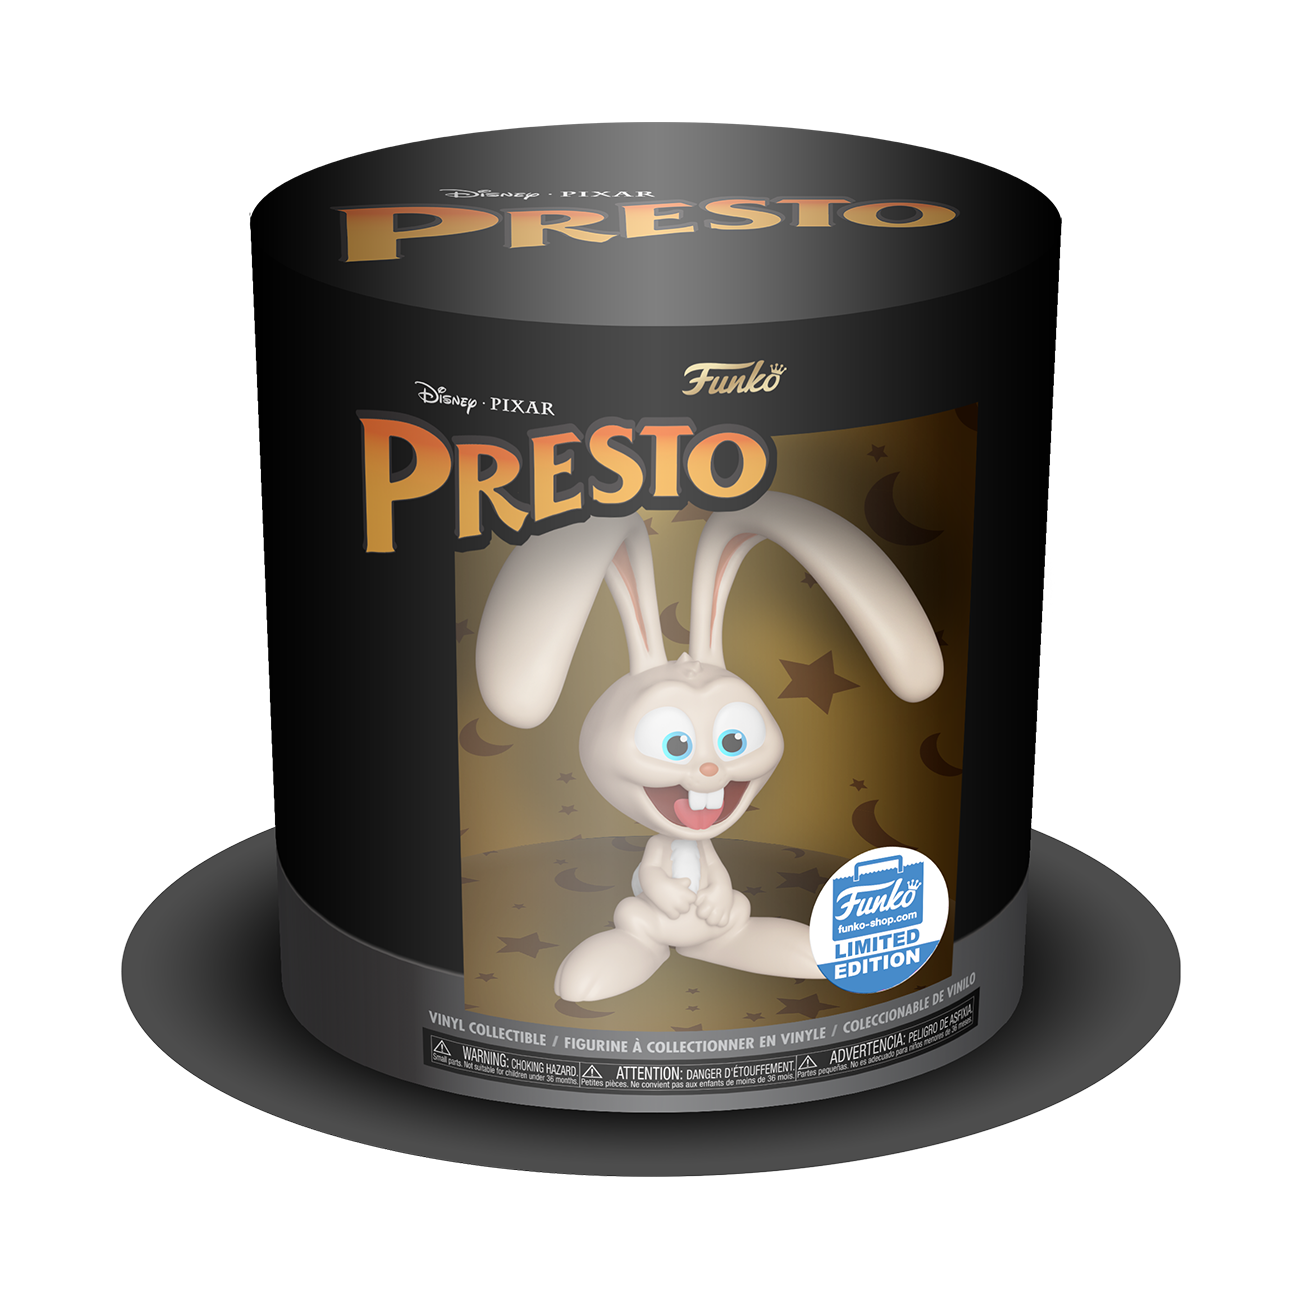 Disney Pixar's Presto Funko Collectible in Top Hat Packaging